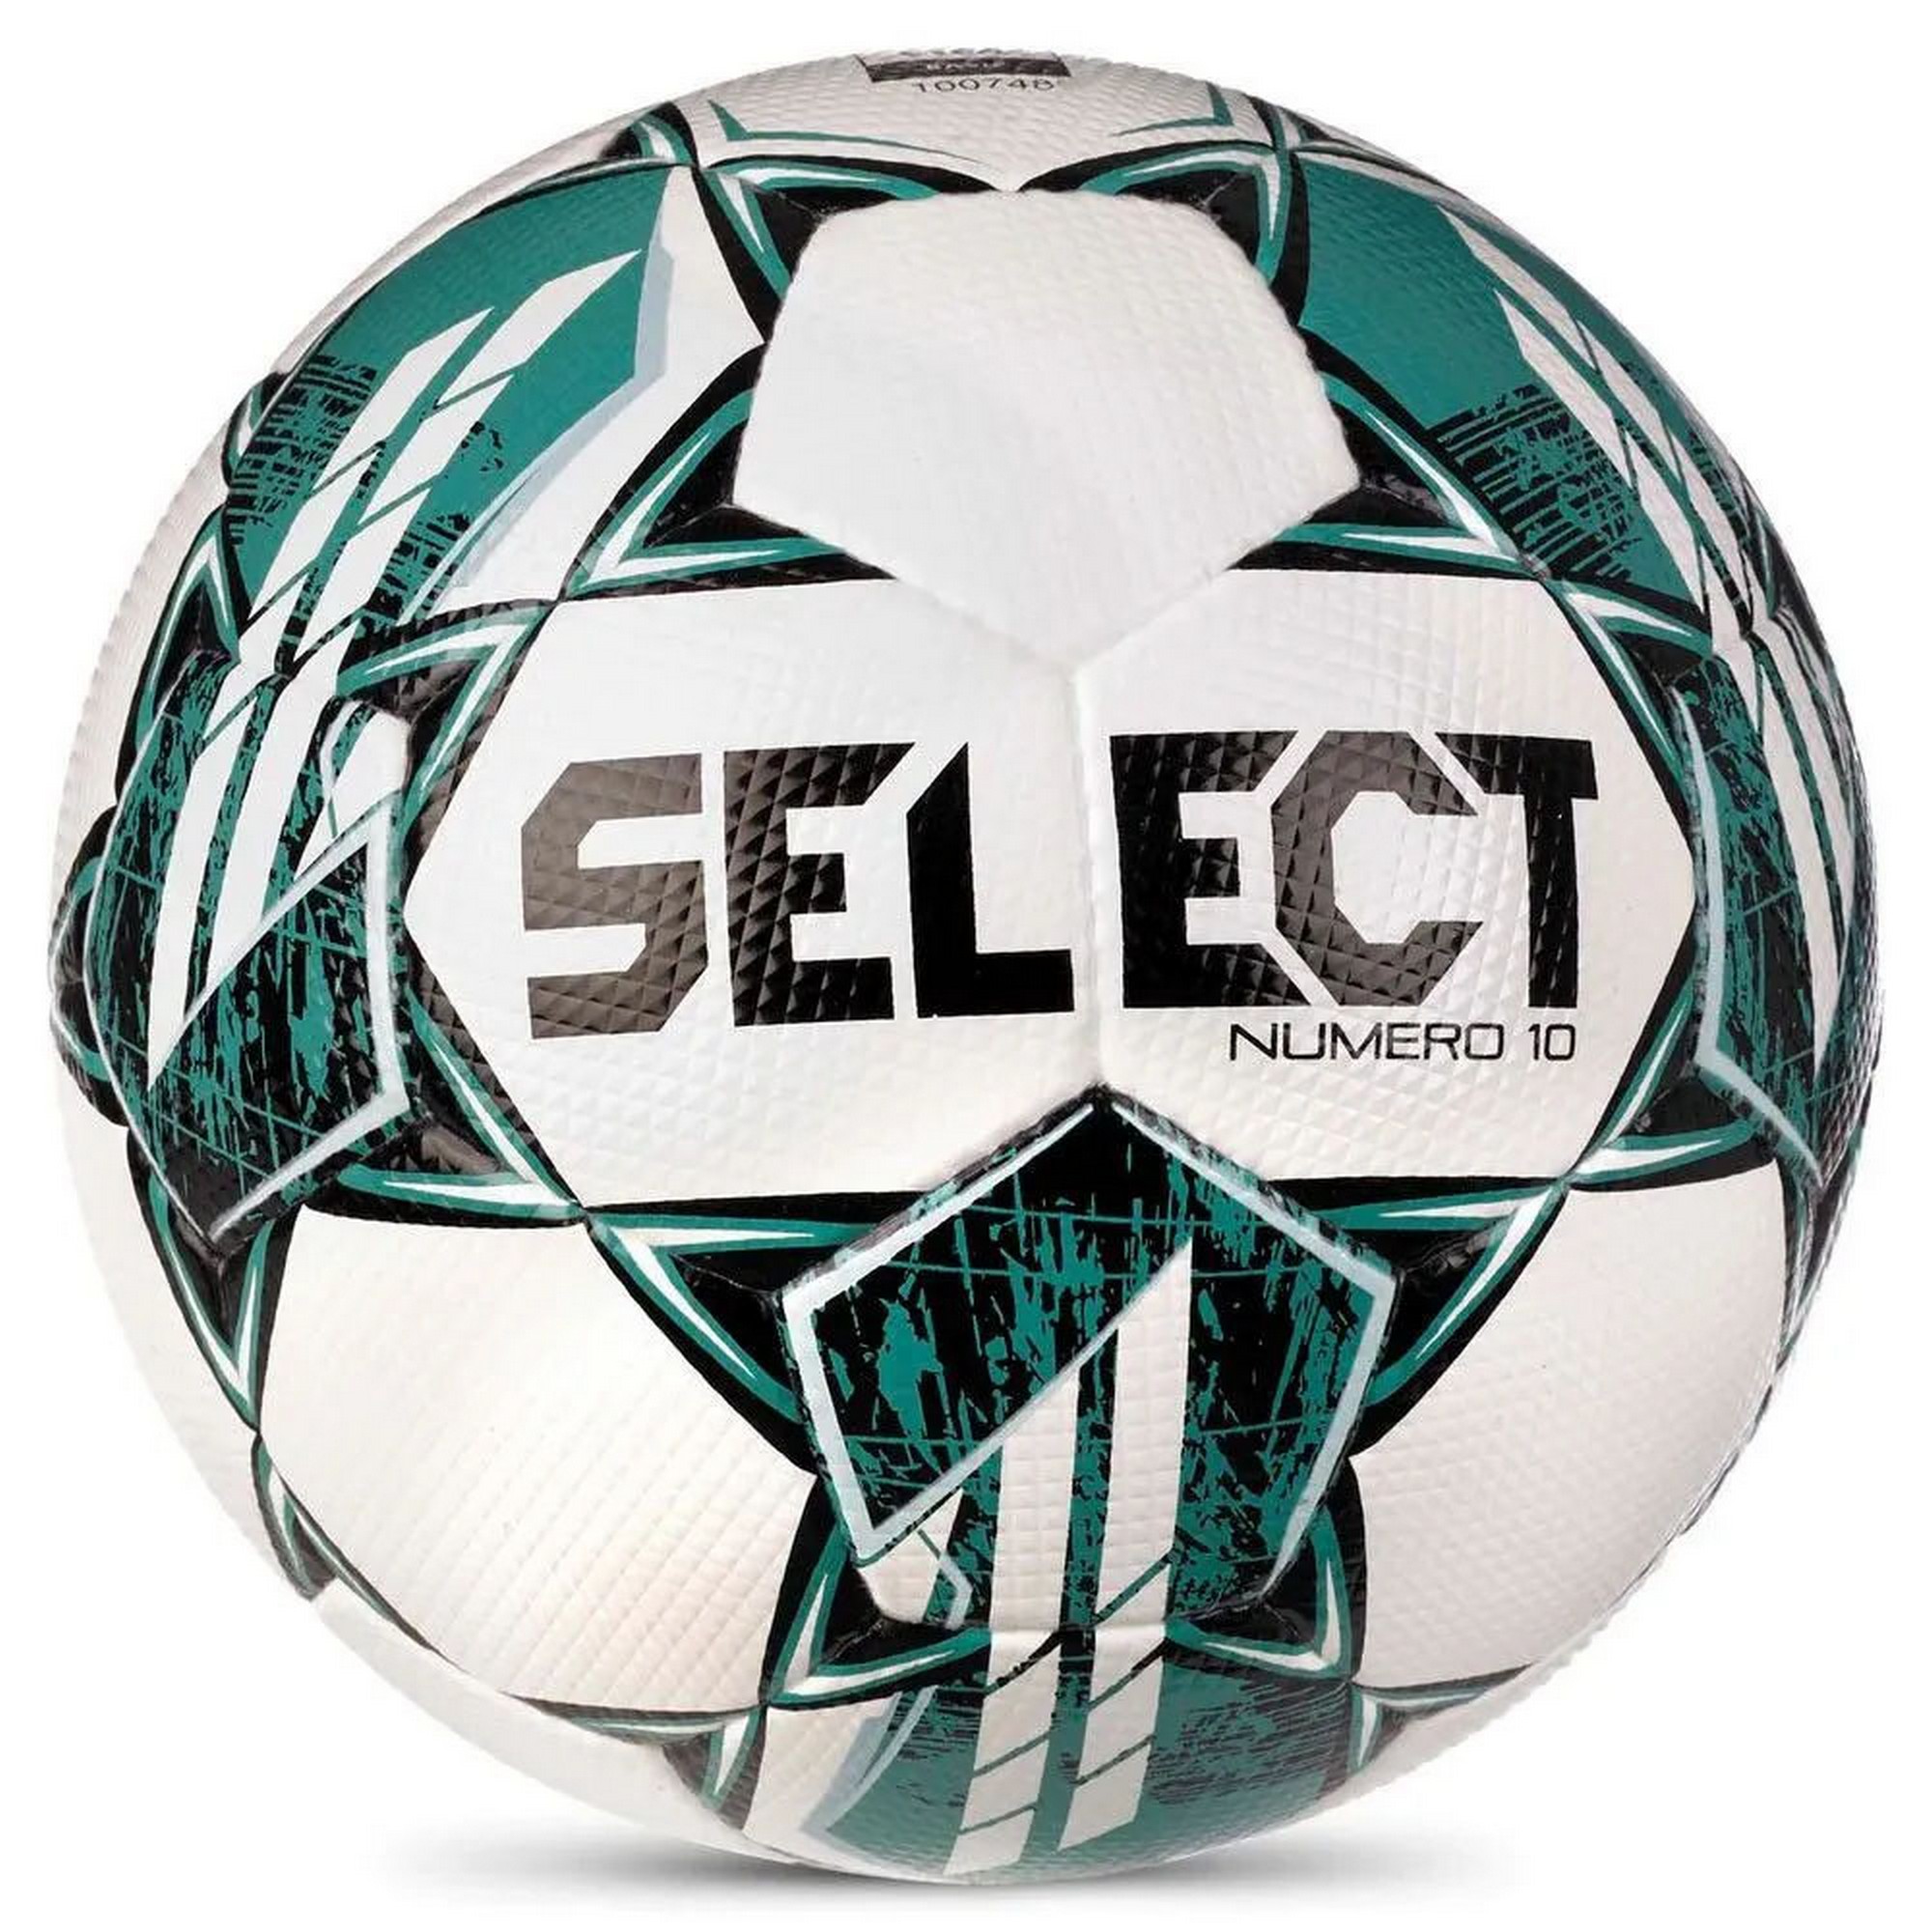 Мяч футбольный профессиональный SELECT Numero 10 V23, размер 5, FIFA Quality Pro